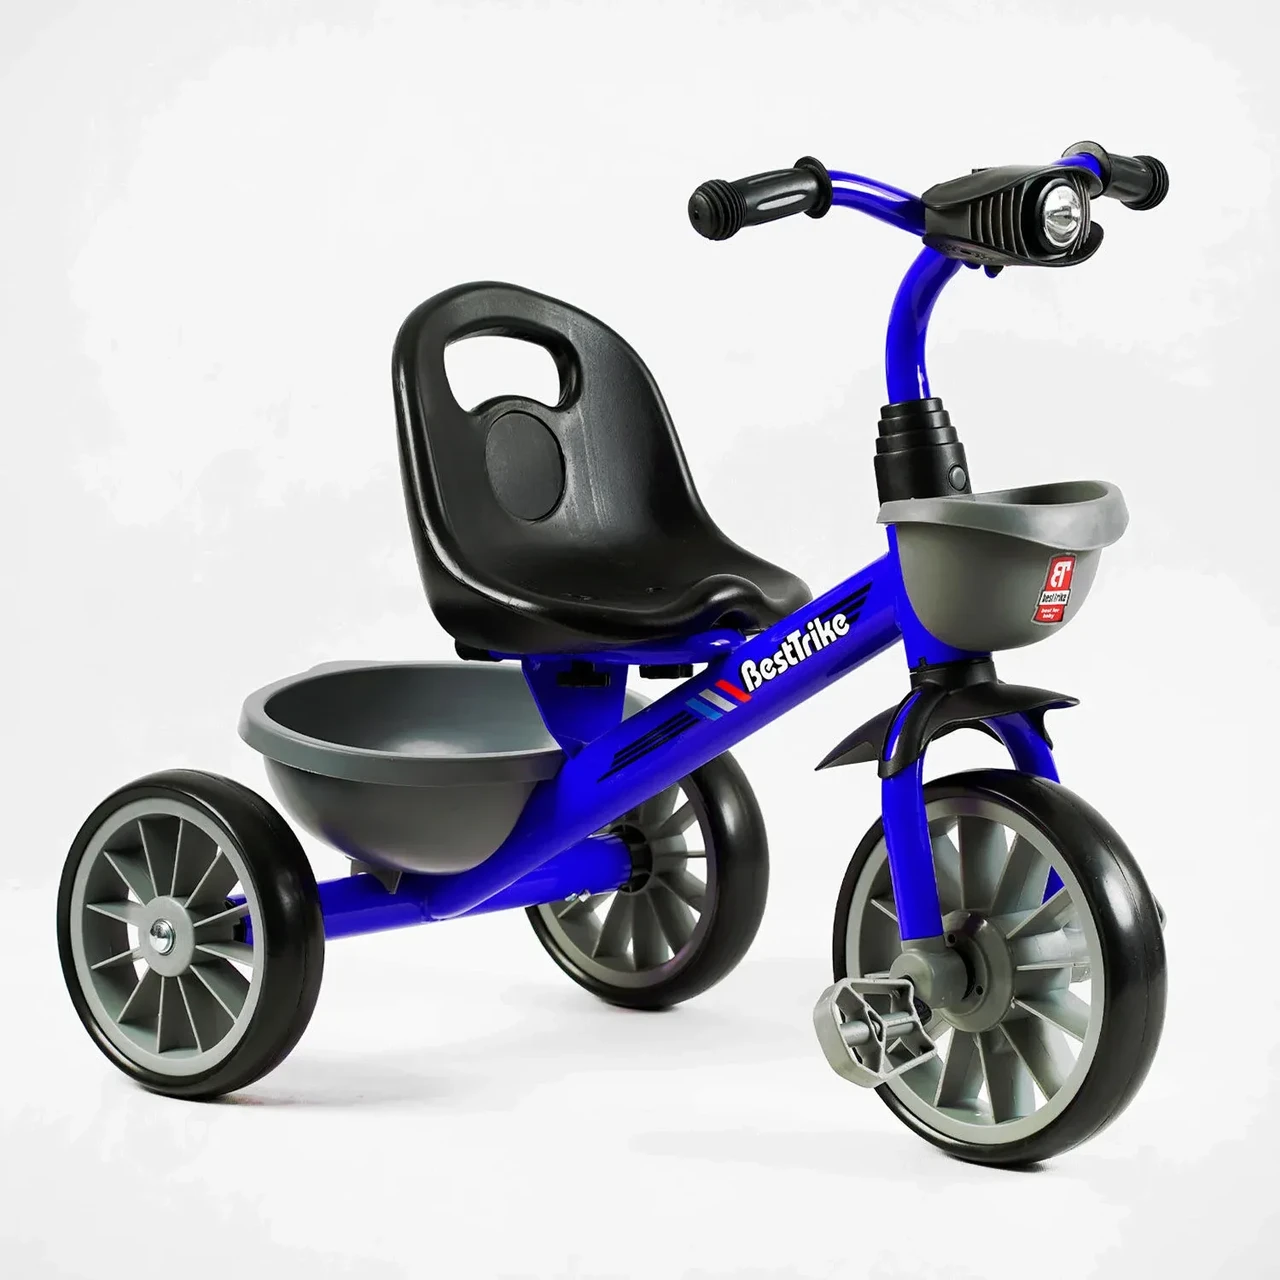 Велосипед дитячий триколісний BS-12530 "Best Trike" на ЄВА колесах, музичний, фара, 2 кошики. Синій